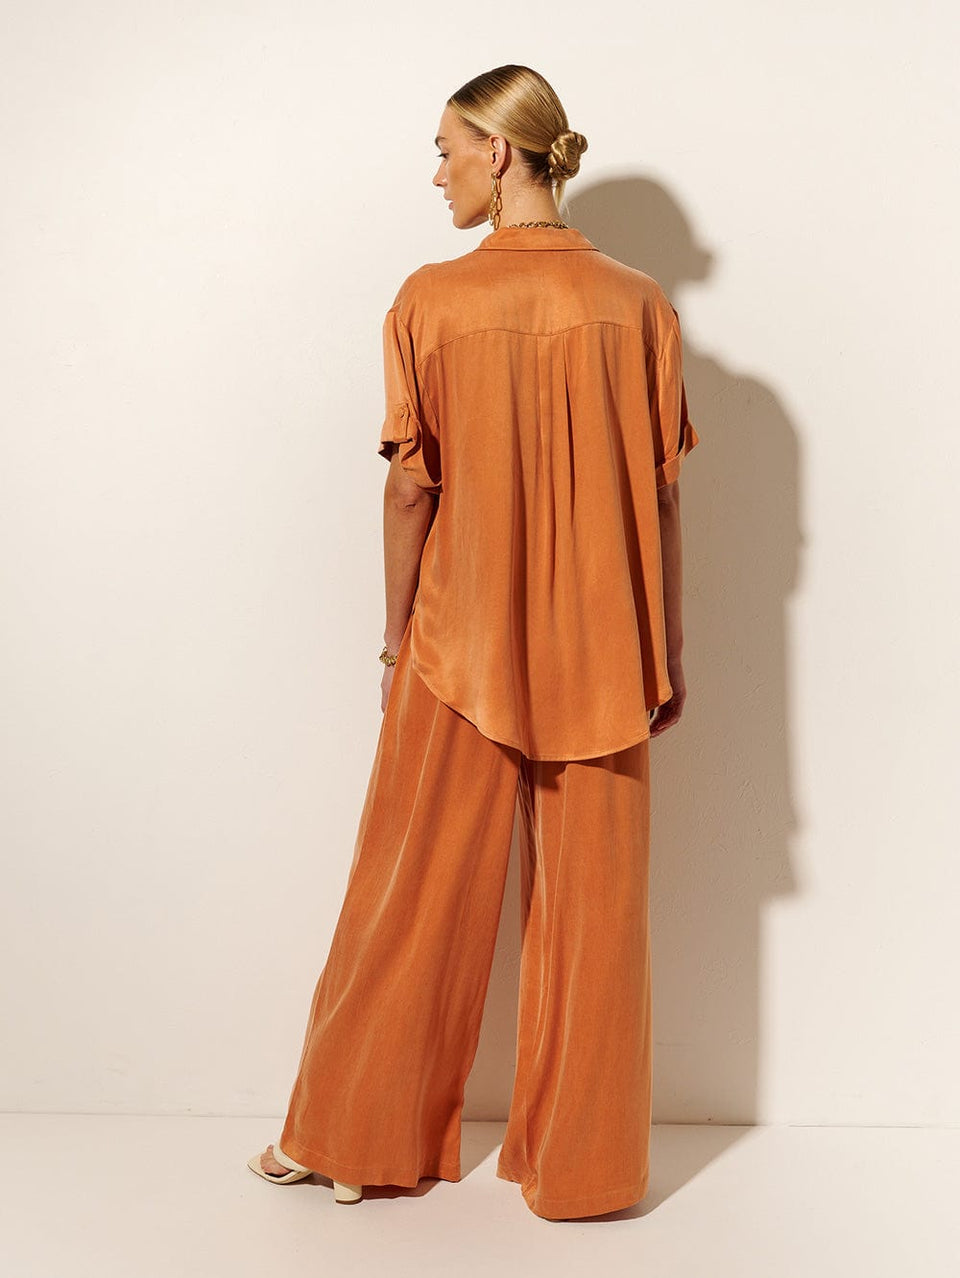 KIVARI Bianca Pant | Model wears Orange Pant Back View